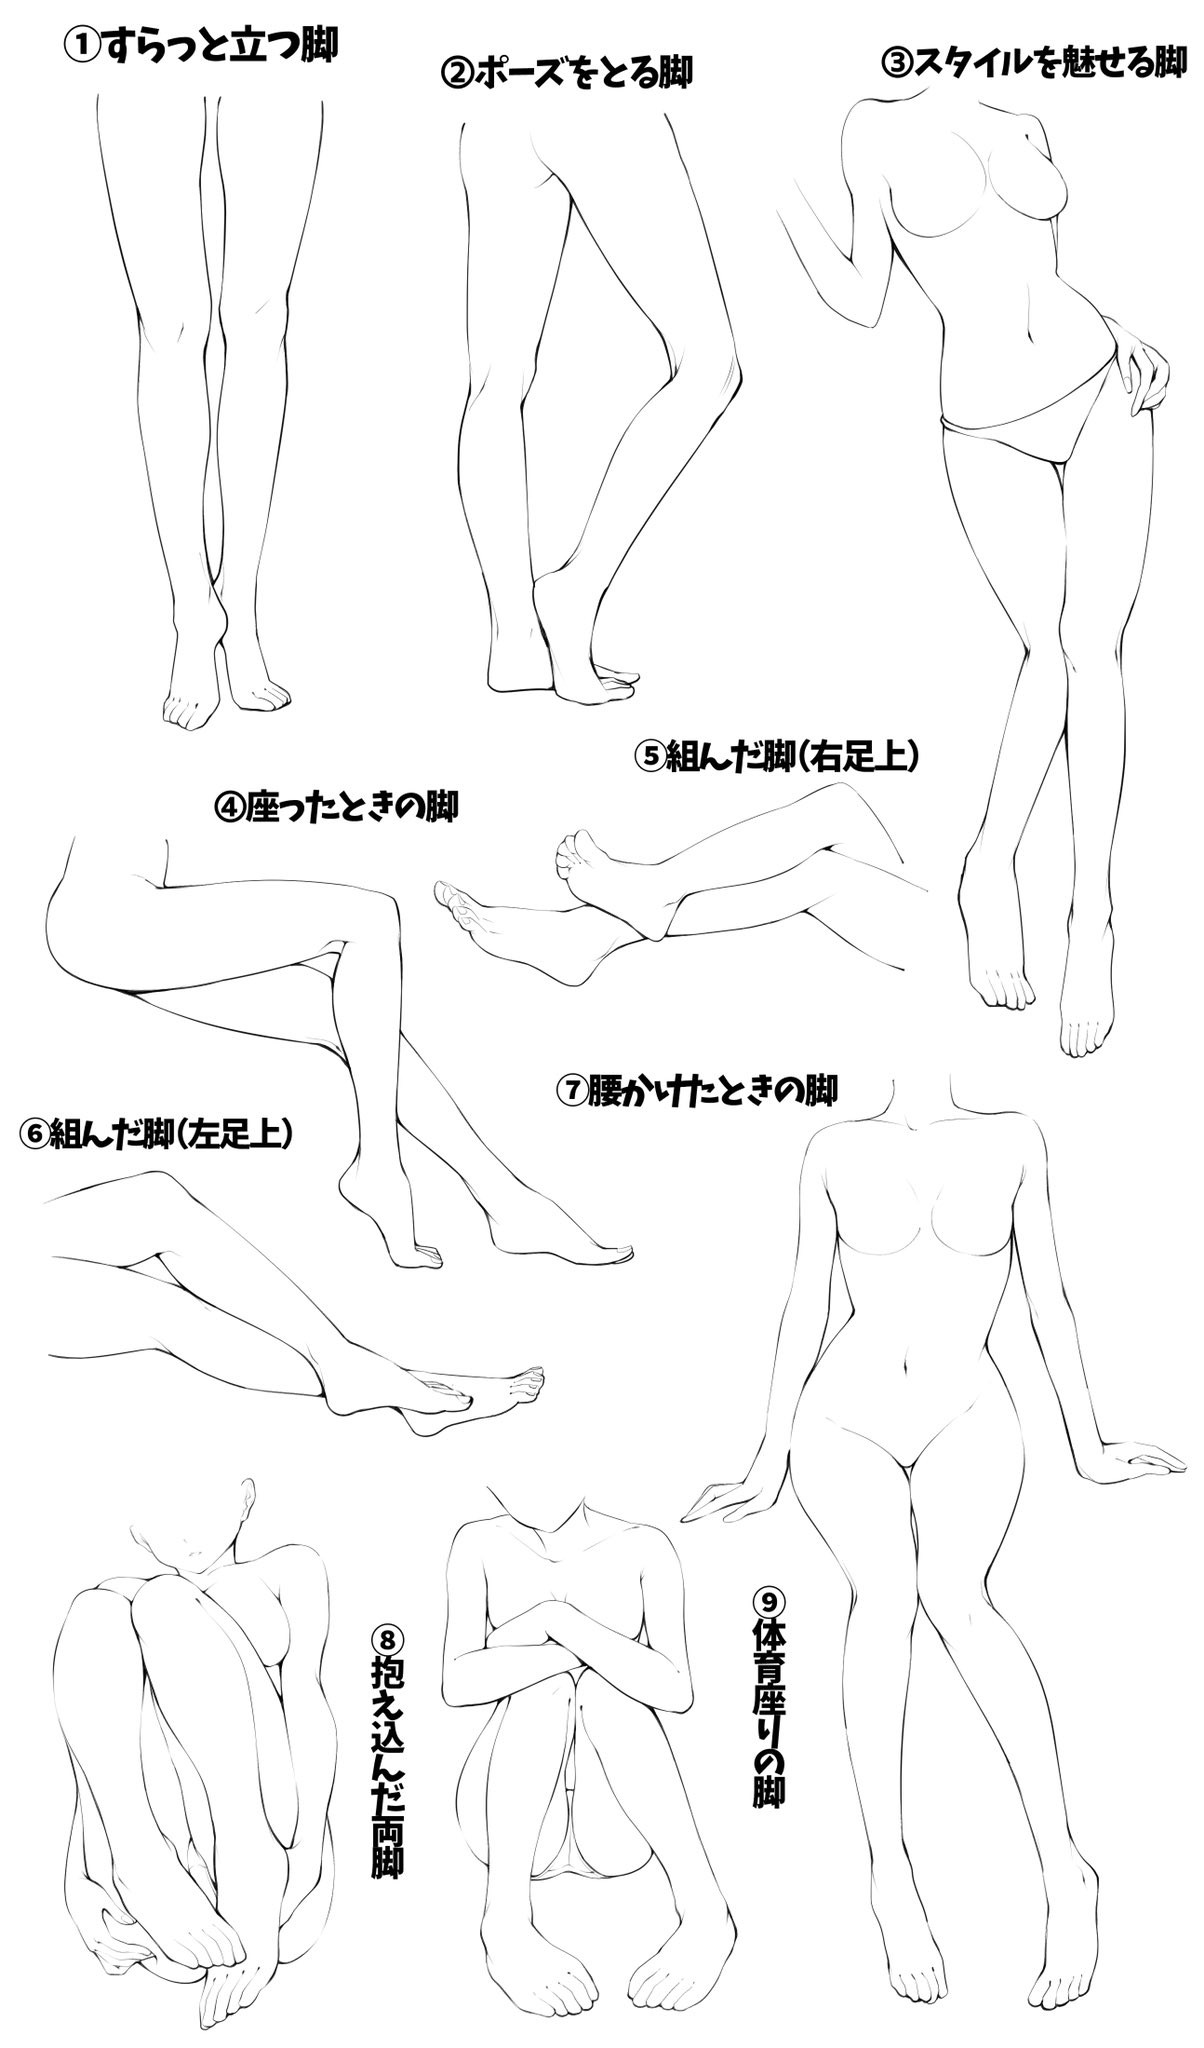 吉村拓也 イラスト講座 いろんな足を模写練習できるように 足パターン模写表 を作りました 線画タイプ と 肌色タイプ T Co Gc6blgoscv Twitter